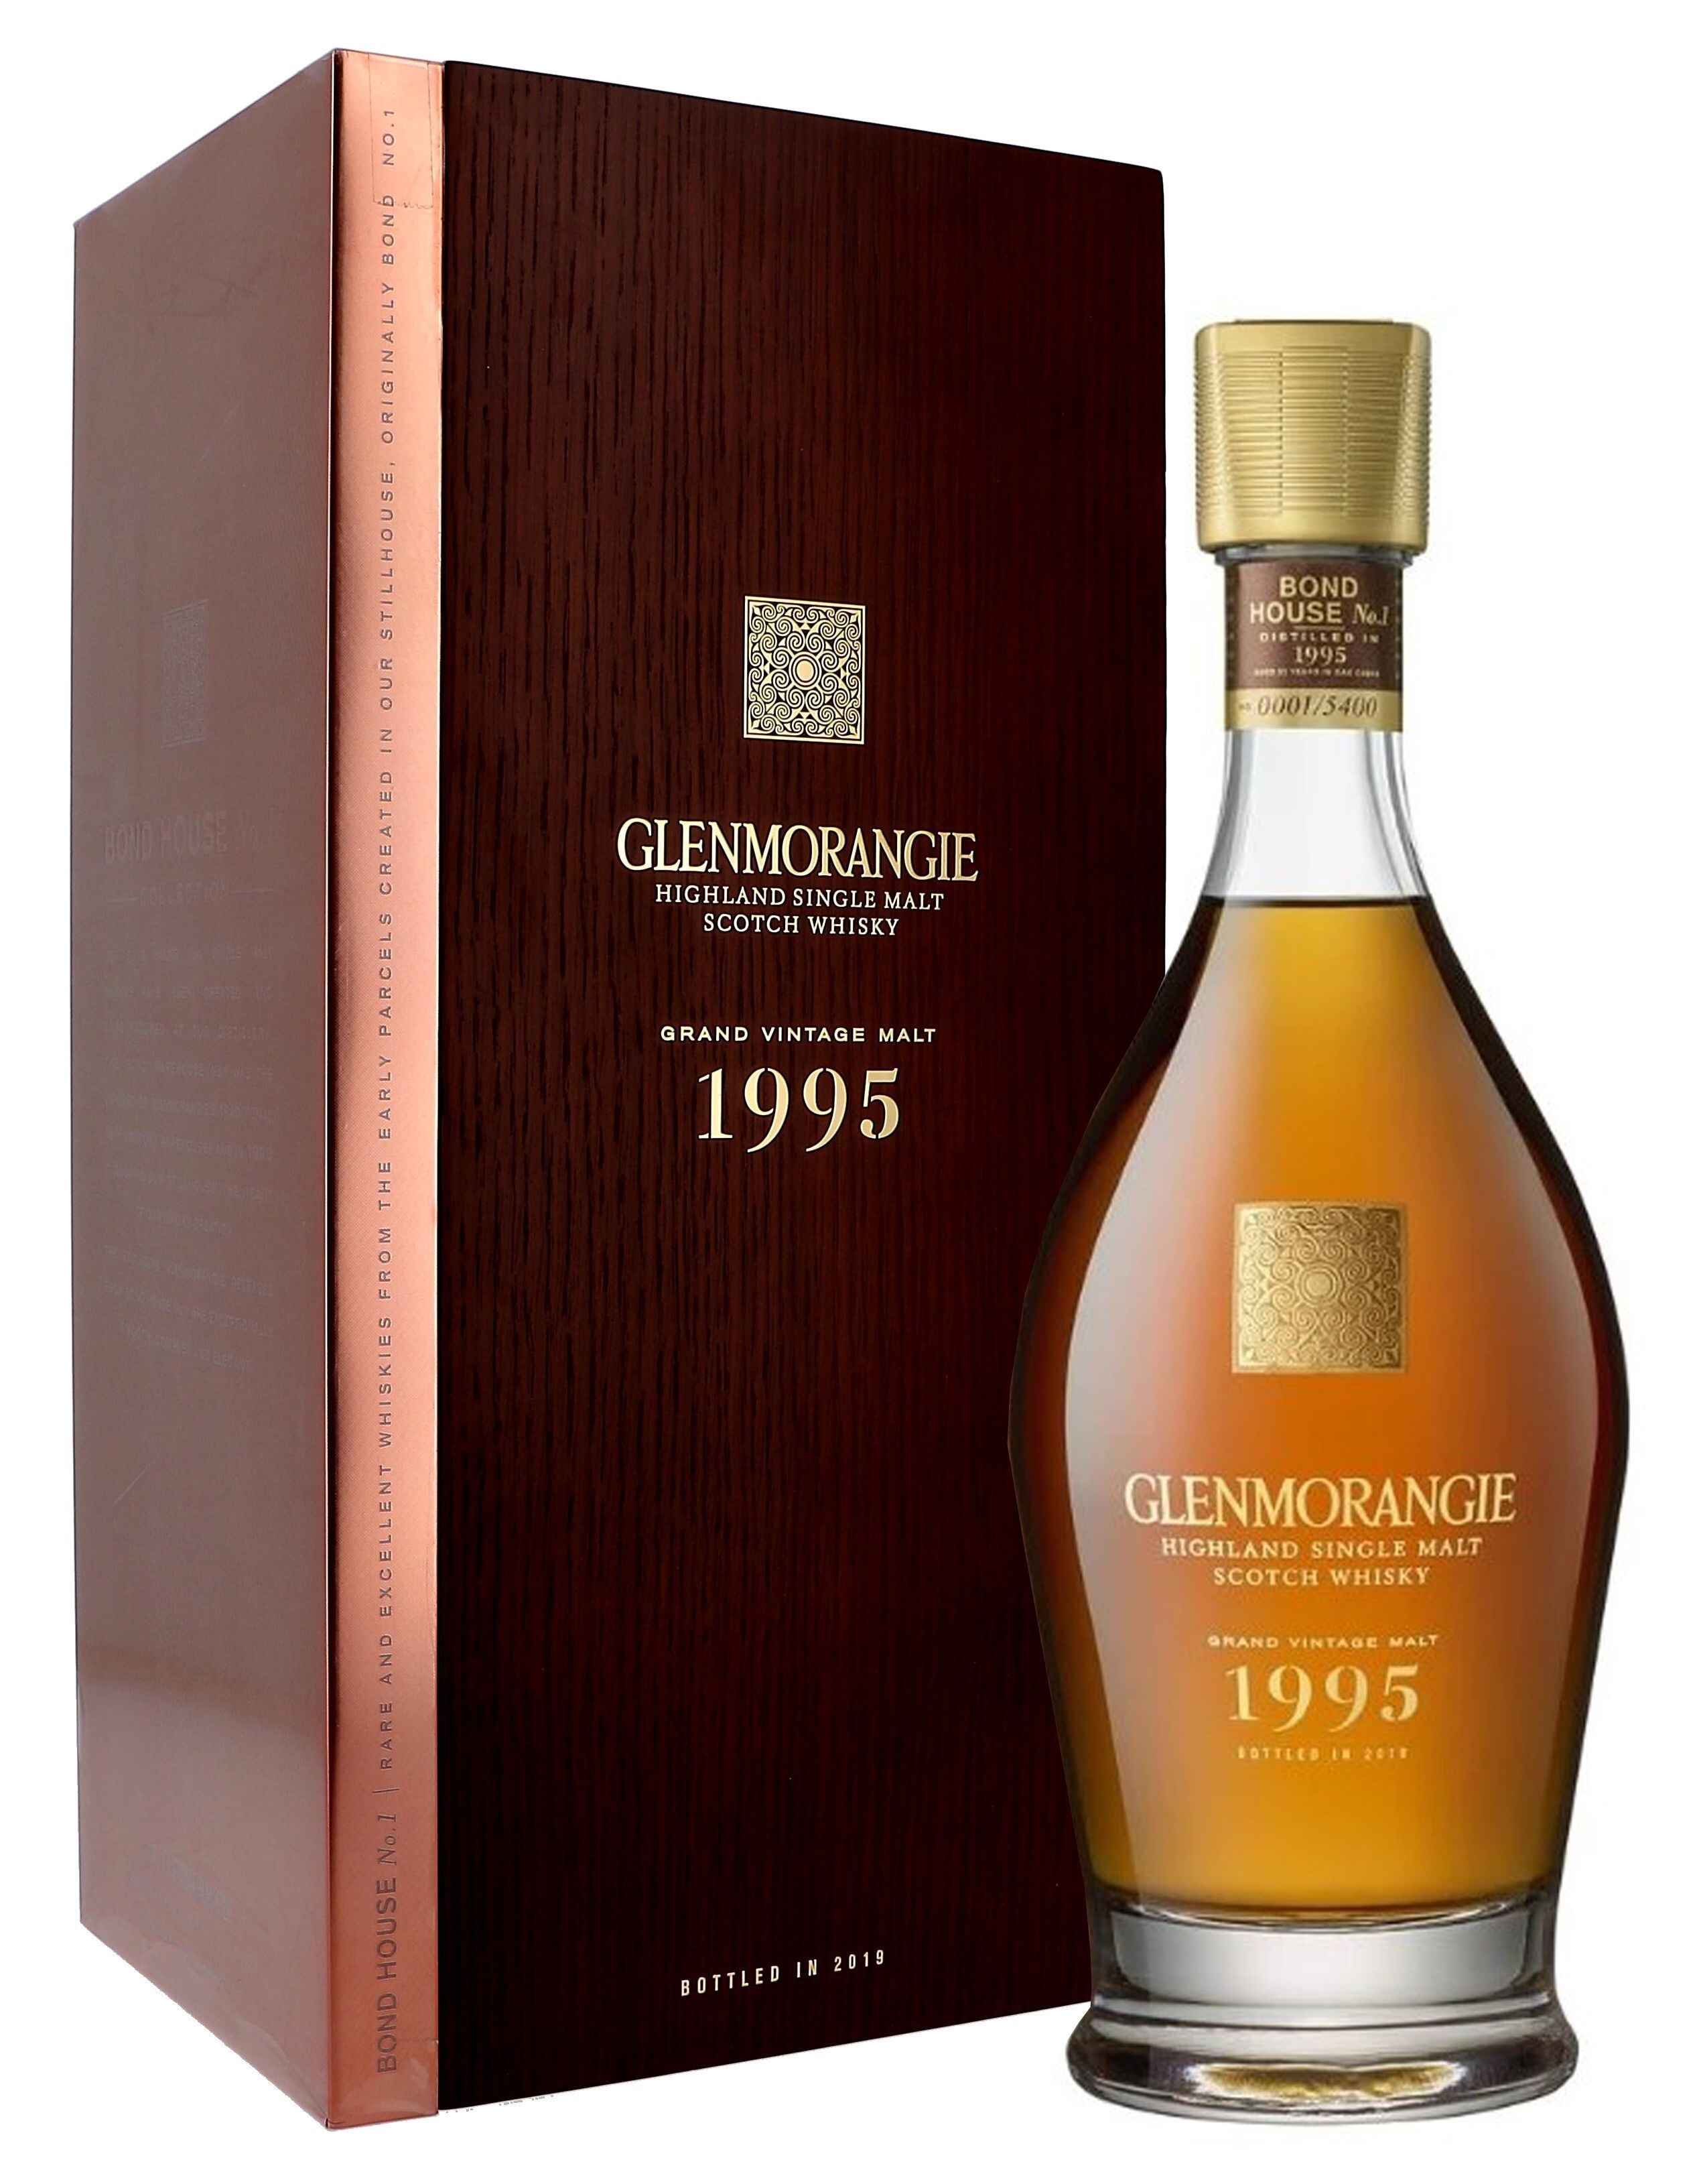 Glenmorangie Grand Vintage 1995 70cl 43% Highland Single Malt Scotch Whisky